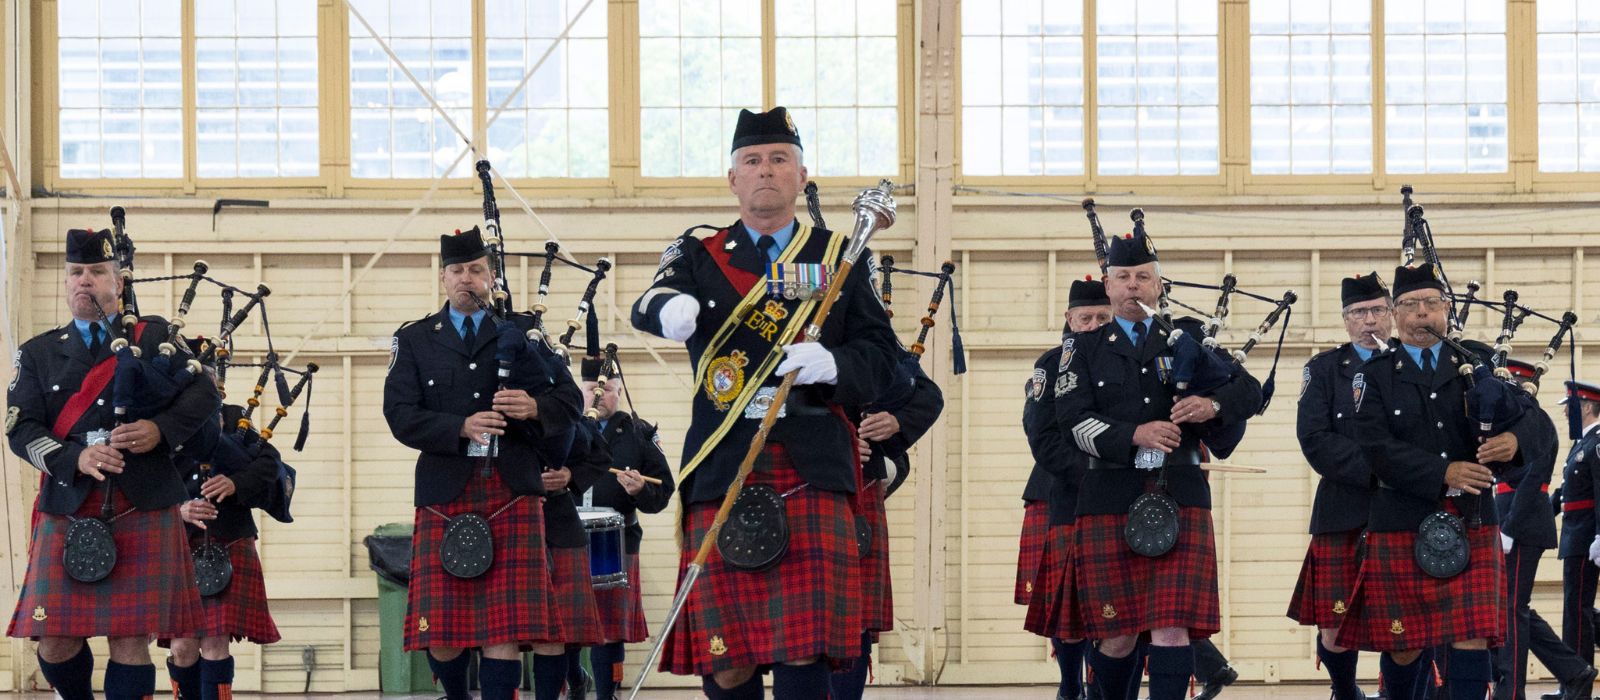 Le corps de cornemuses de la police d'Ottawa marchant et jouant de ses instruments lors d'un événement intérieur.